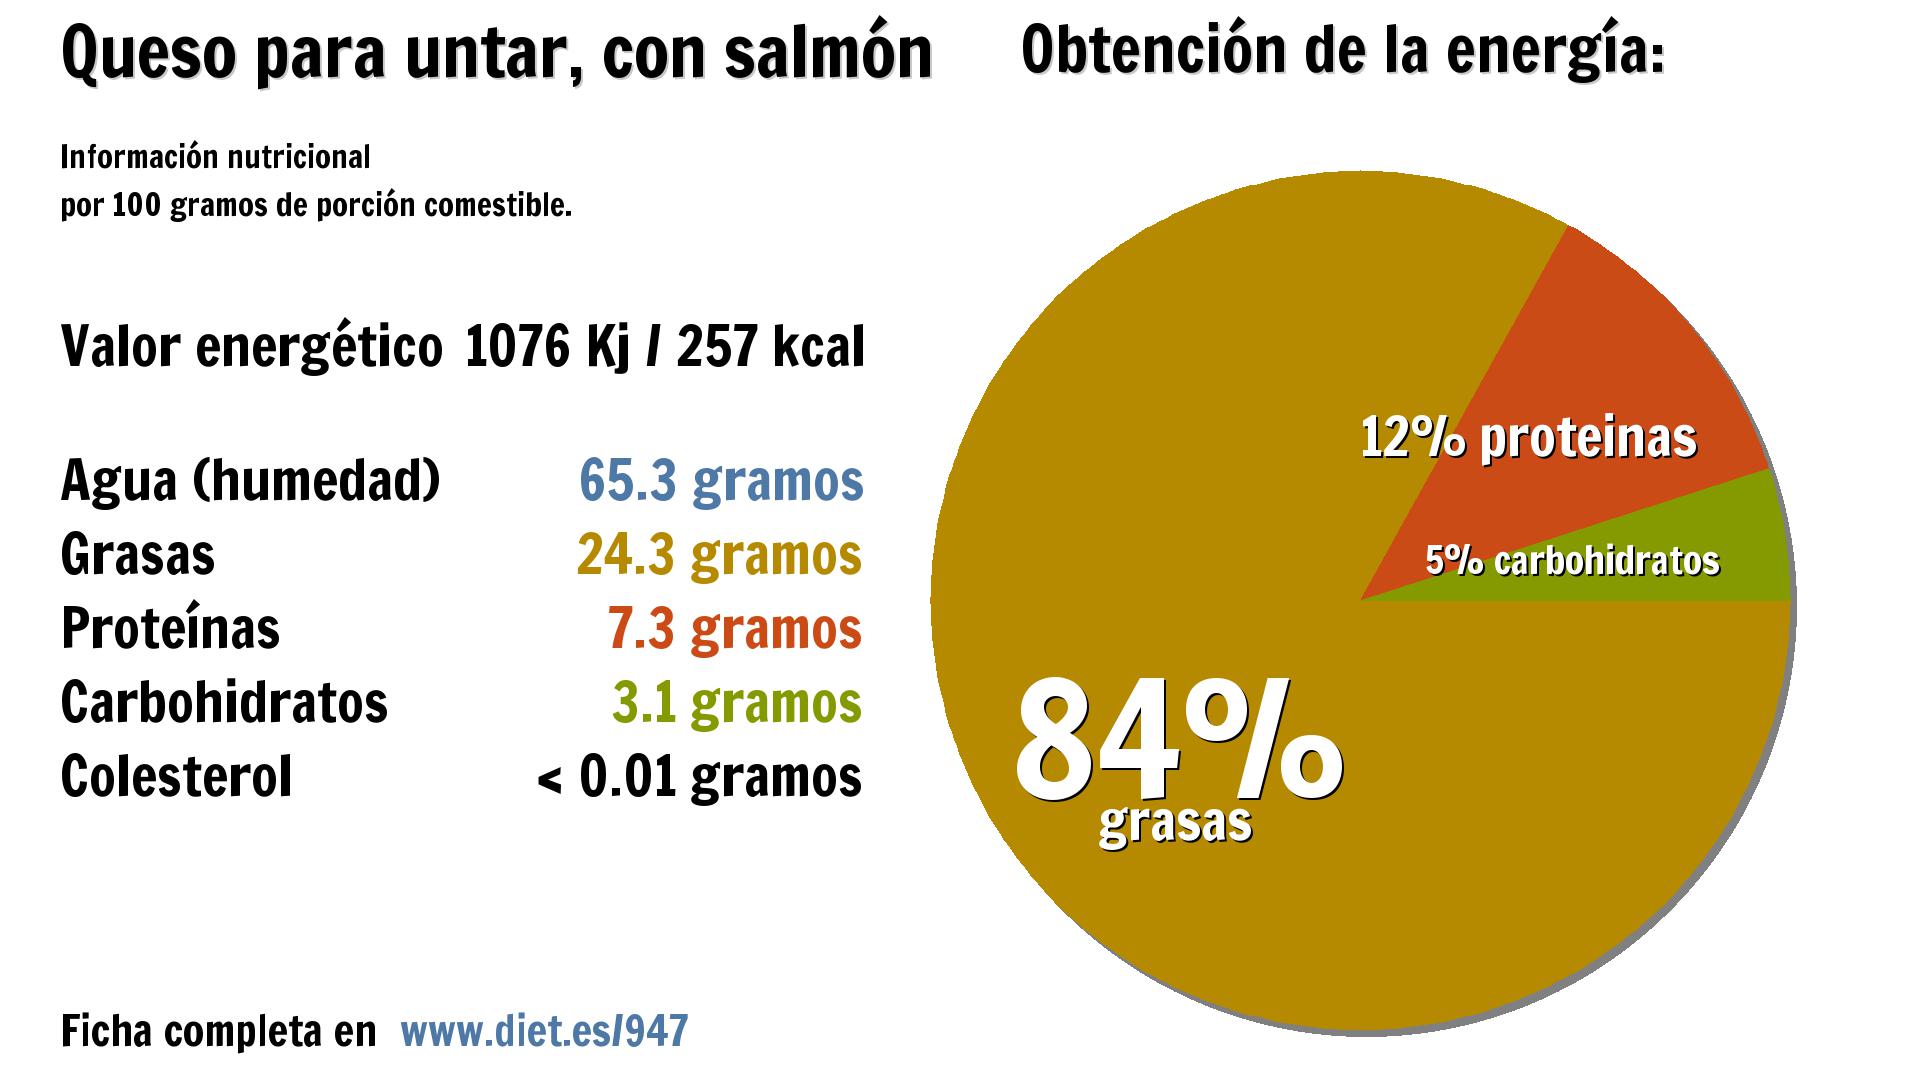 Queso para untar, con salmón: energía 1076 Kj, agua 65 g., grasas 24 g., proteínas 7 g. y carbohidratos 3 g.